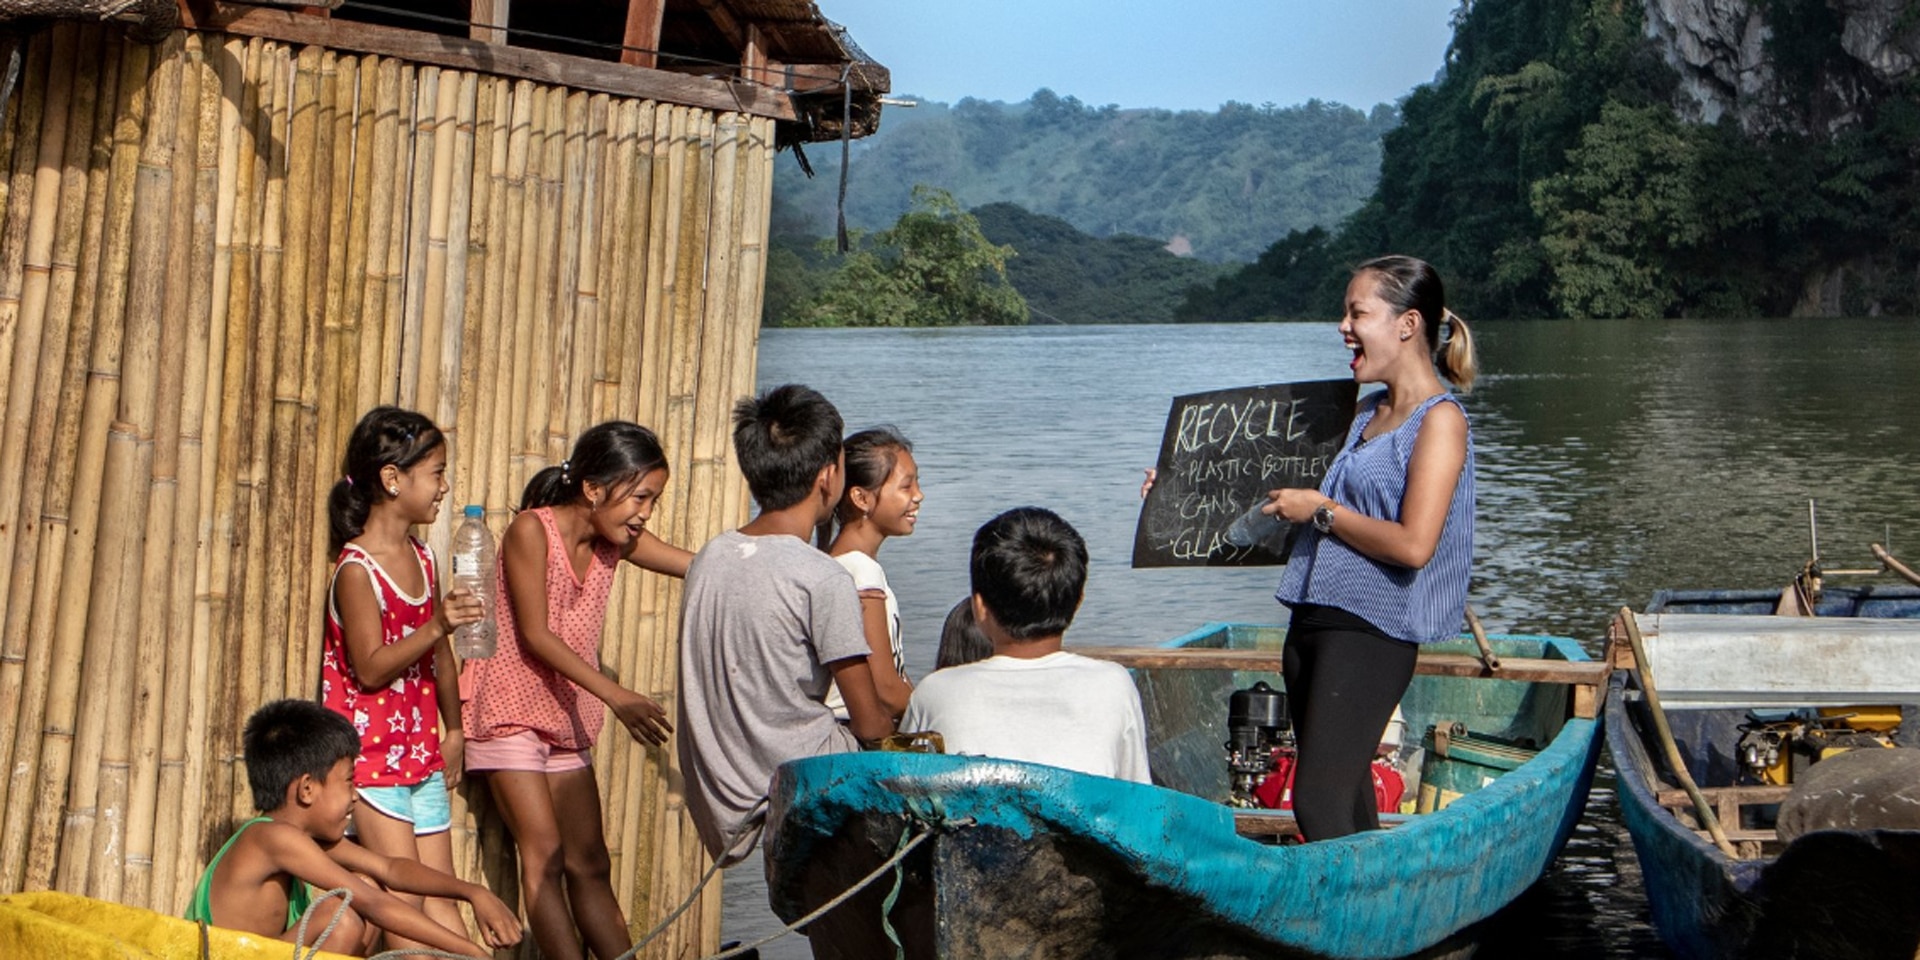 Une jeune femme donne un cours à des enfants sur un bateau sur un cours d’eau aux Philippines.